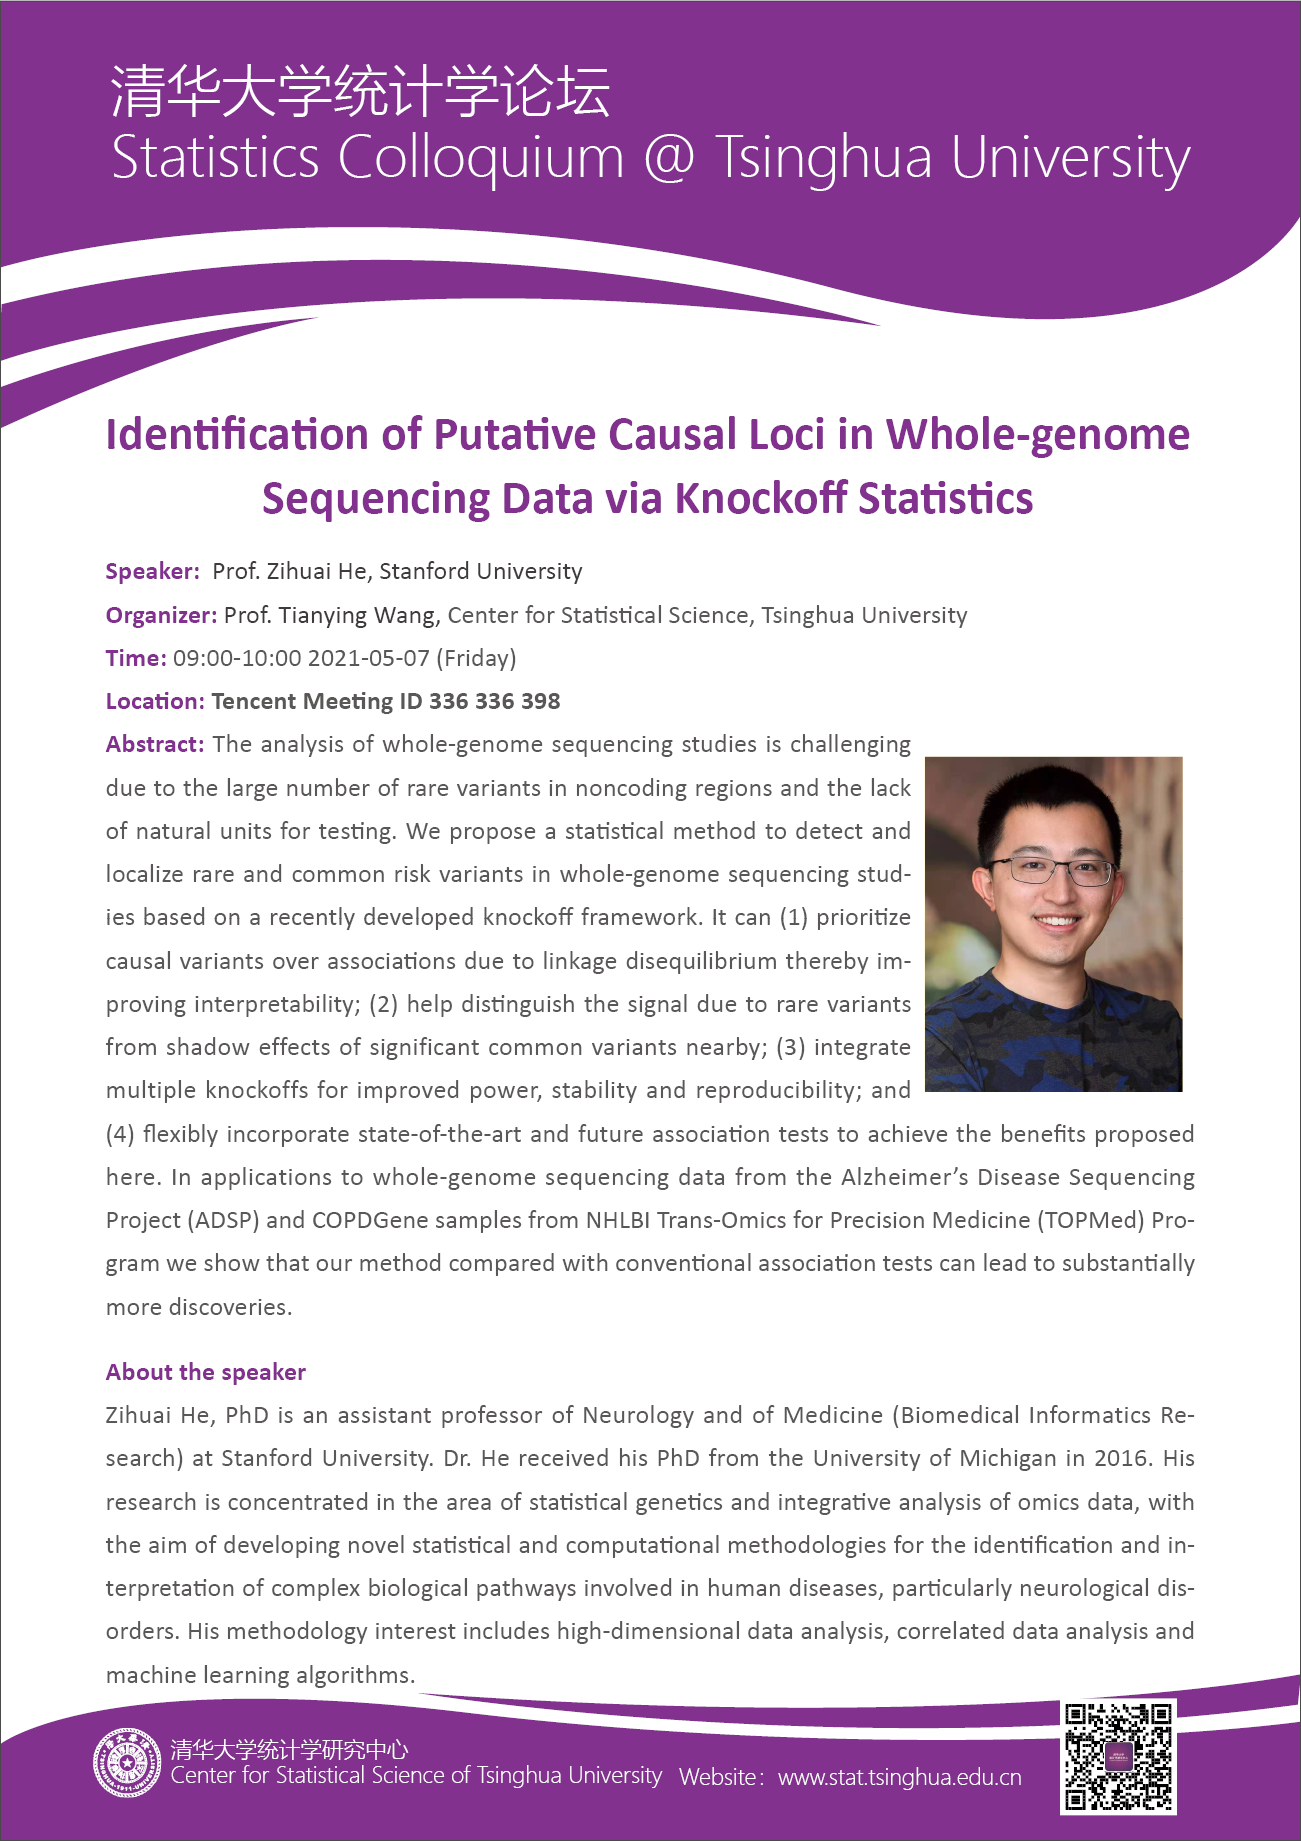 【统计学论坛】Identification of Putative Causal Loci in Whole-genome Sequencing Data via Knockoff Statistics